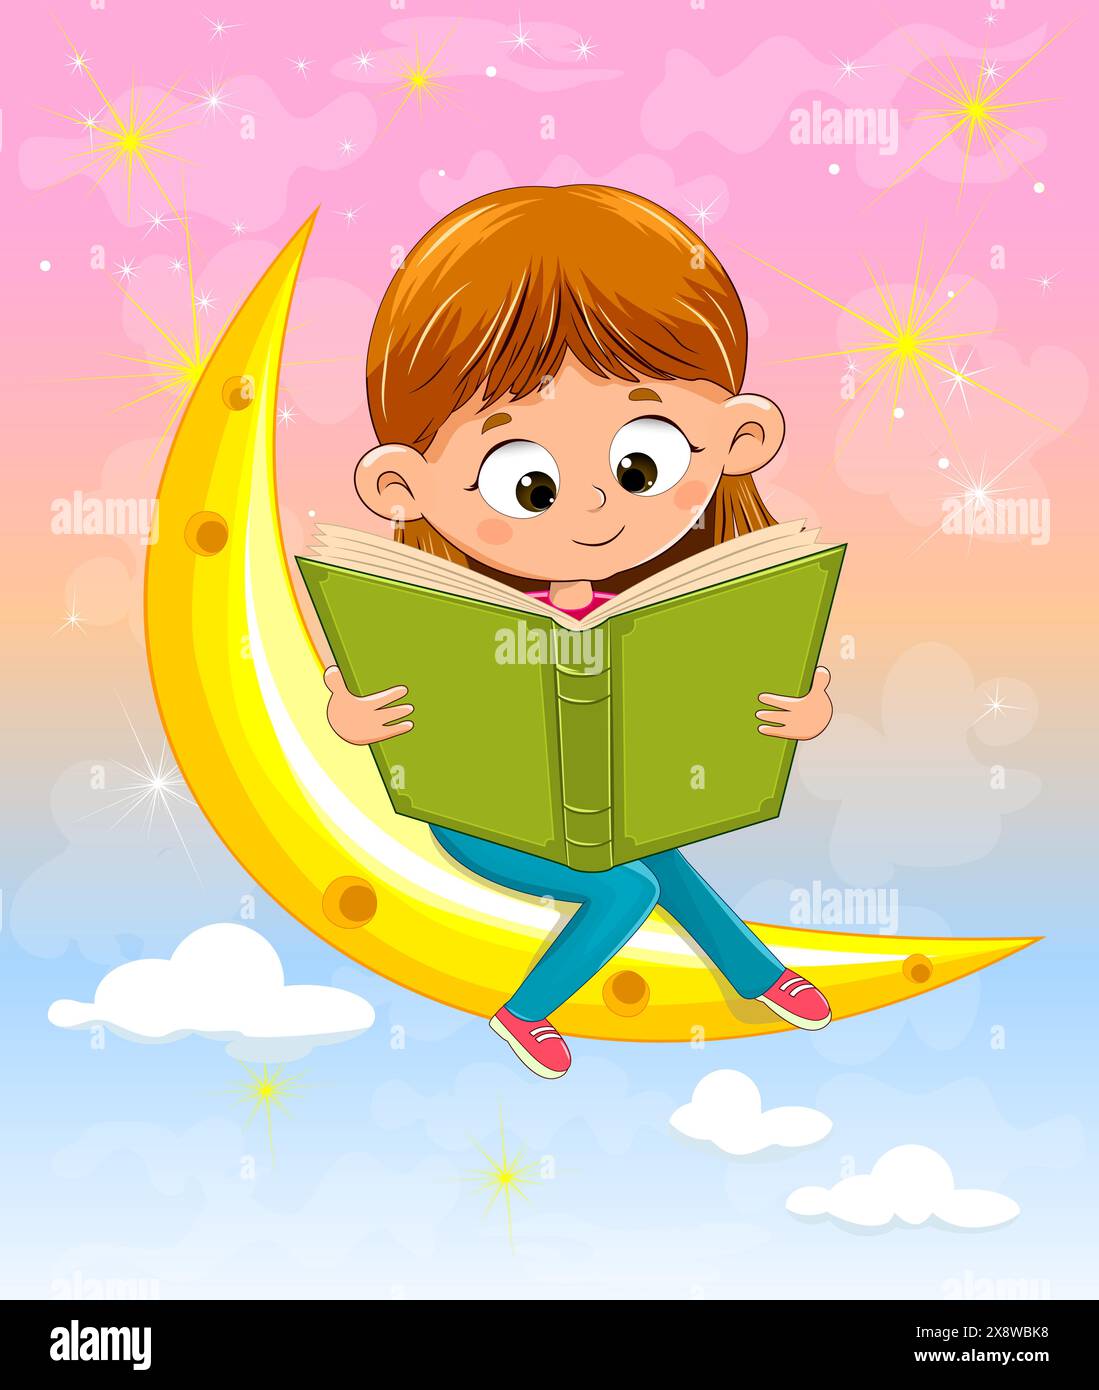 Ein kleines Mädchen mit einem Buch in der Hand sitzt auf einem Cartoon-Mond. Das Mädchen liest ein Buch. Stock Vektor